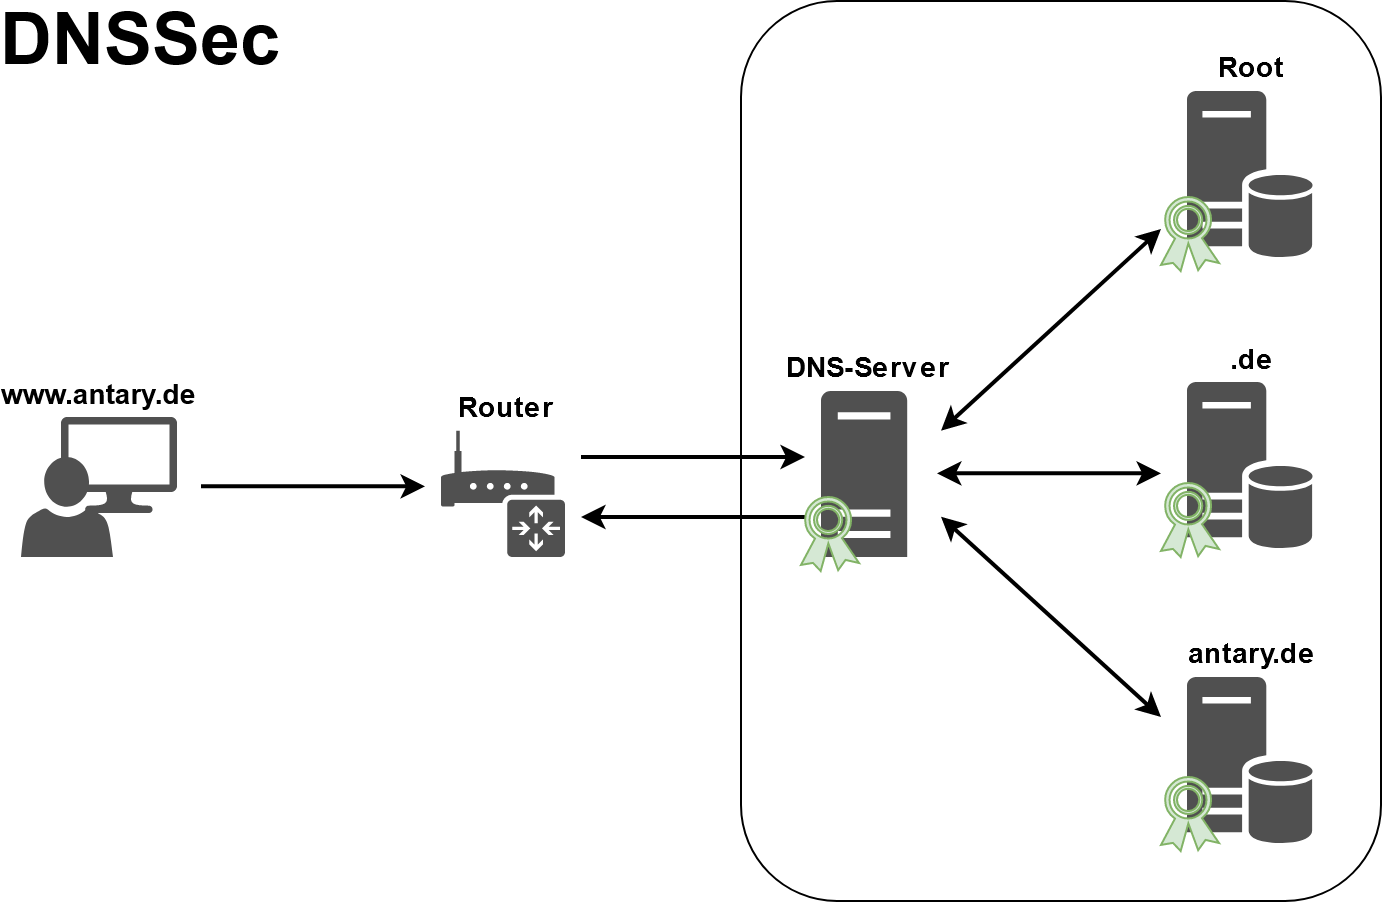 Over tls. Серверы DNS-over-https. DNSSEC схема. DNSSEC что это. Схема смартфона ДНС 5001.